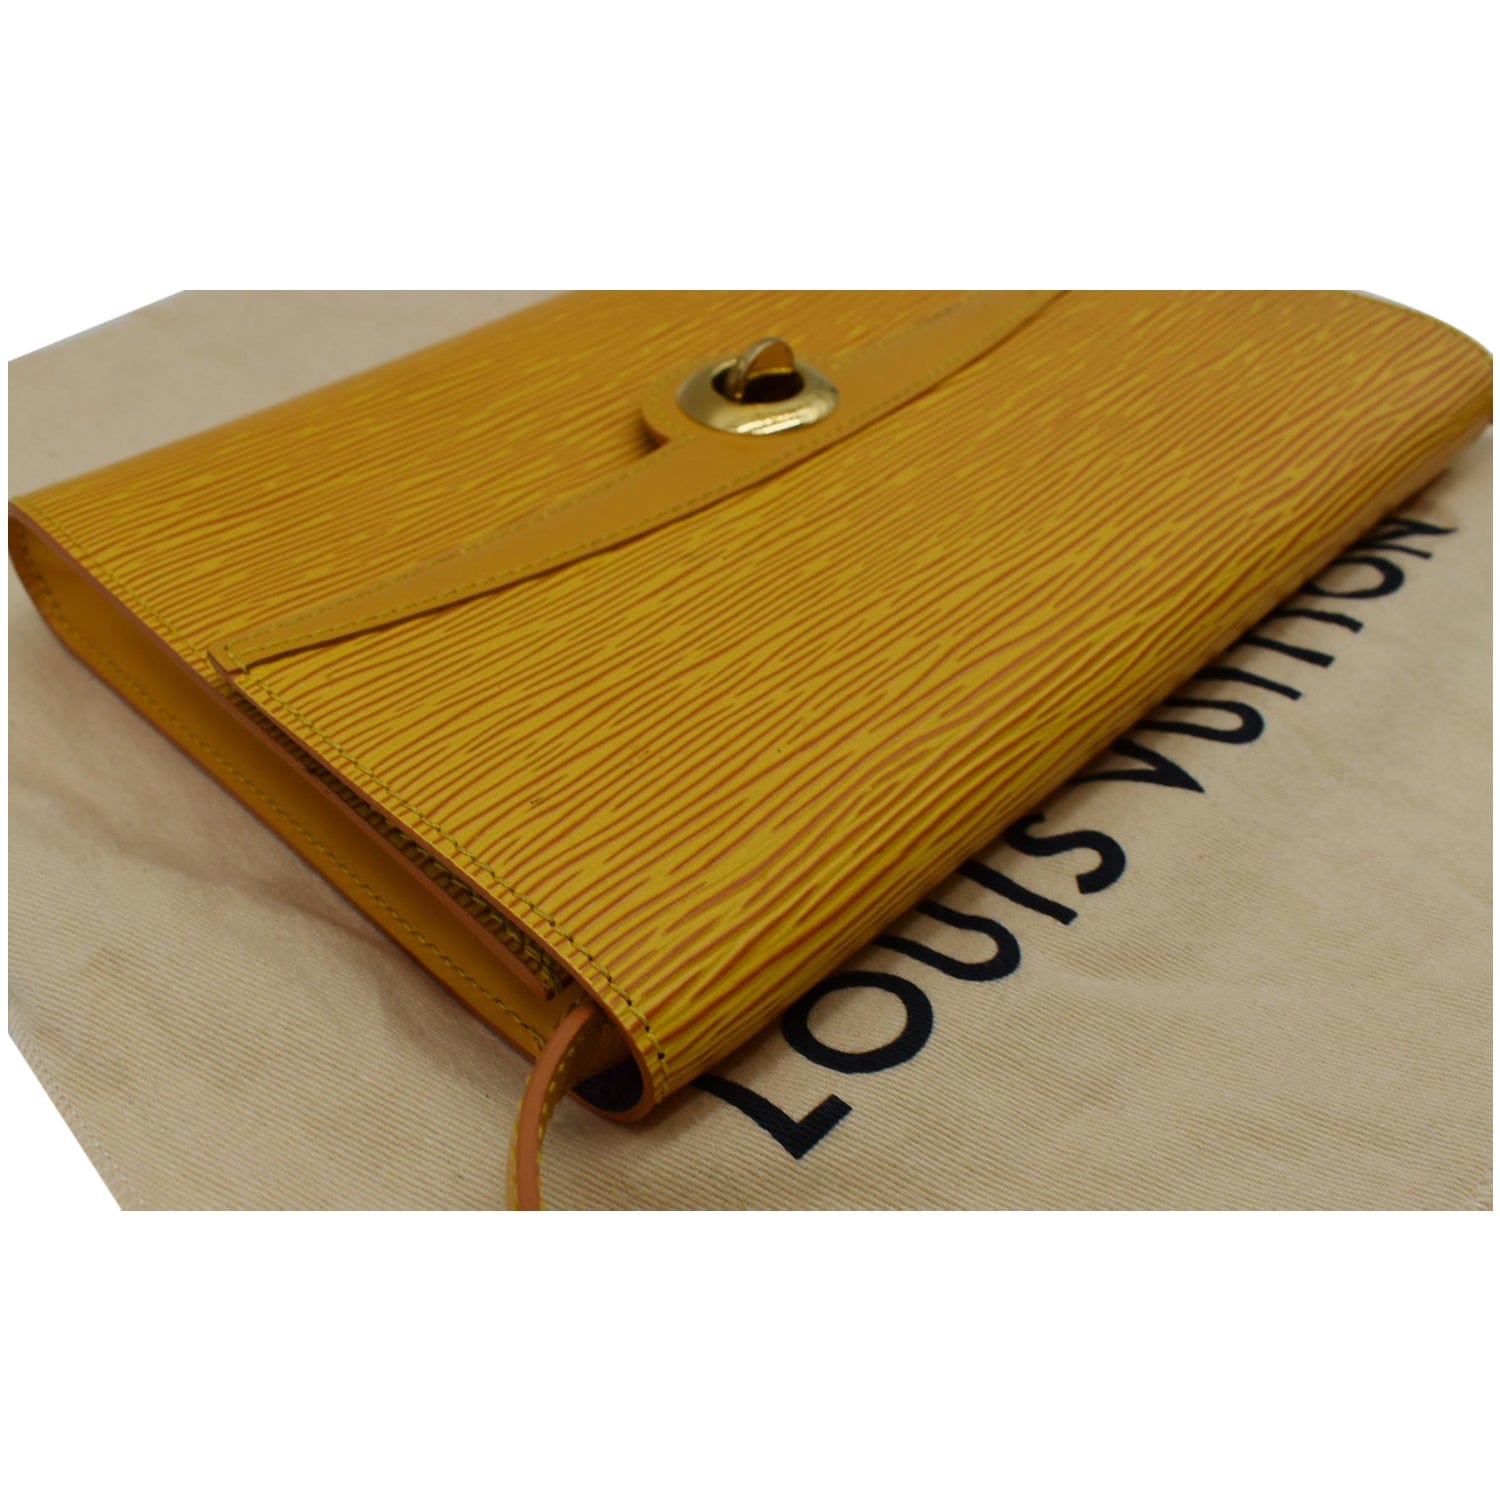 Louis Vuitton Yellow Epi Pochette (AR1927) – Luxury Leather Guys